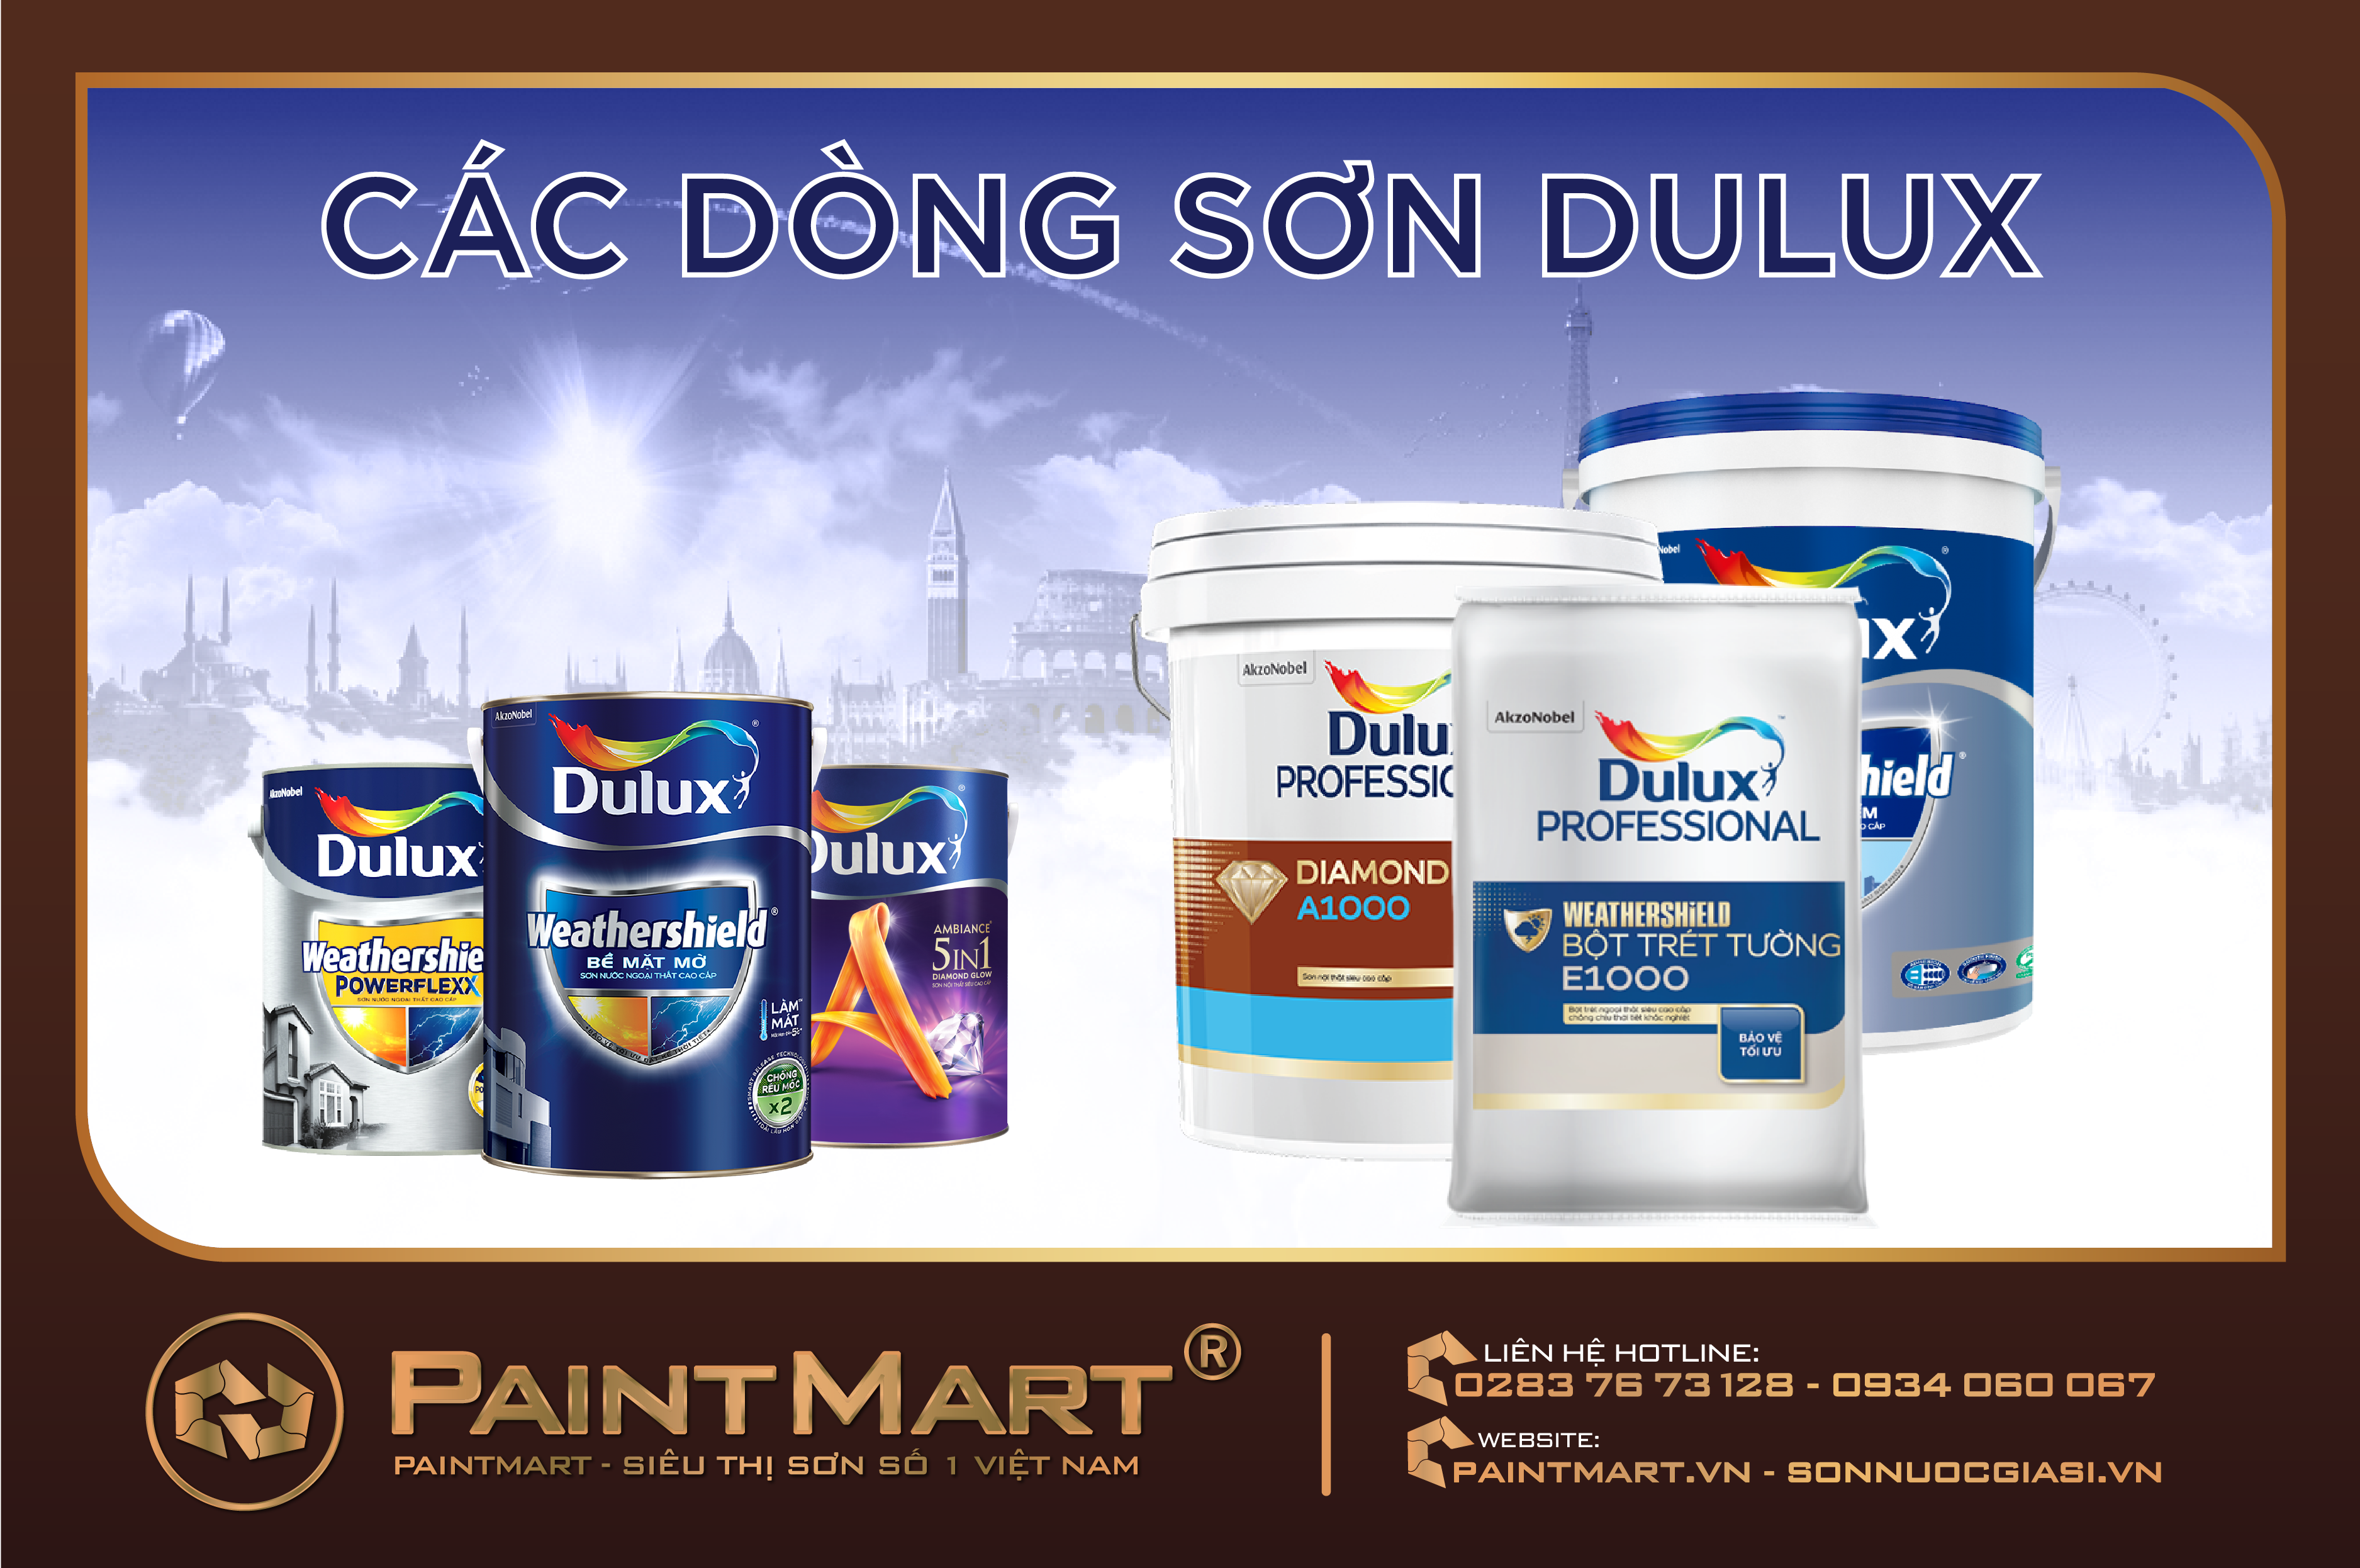 Dòng sơn Dulux - Với nhiều loại sơn chất lượng khác nhau, dòng sơn Dulux mang lại sự hoàn hảo và độ bền cao. Hãy khám phá các hình ảnh liên quan đến dòng sơn Dulux để lựa chọn sản phẩm tốt nhất cho ngôi nhà của bạn.